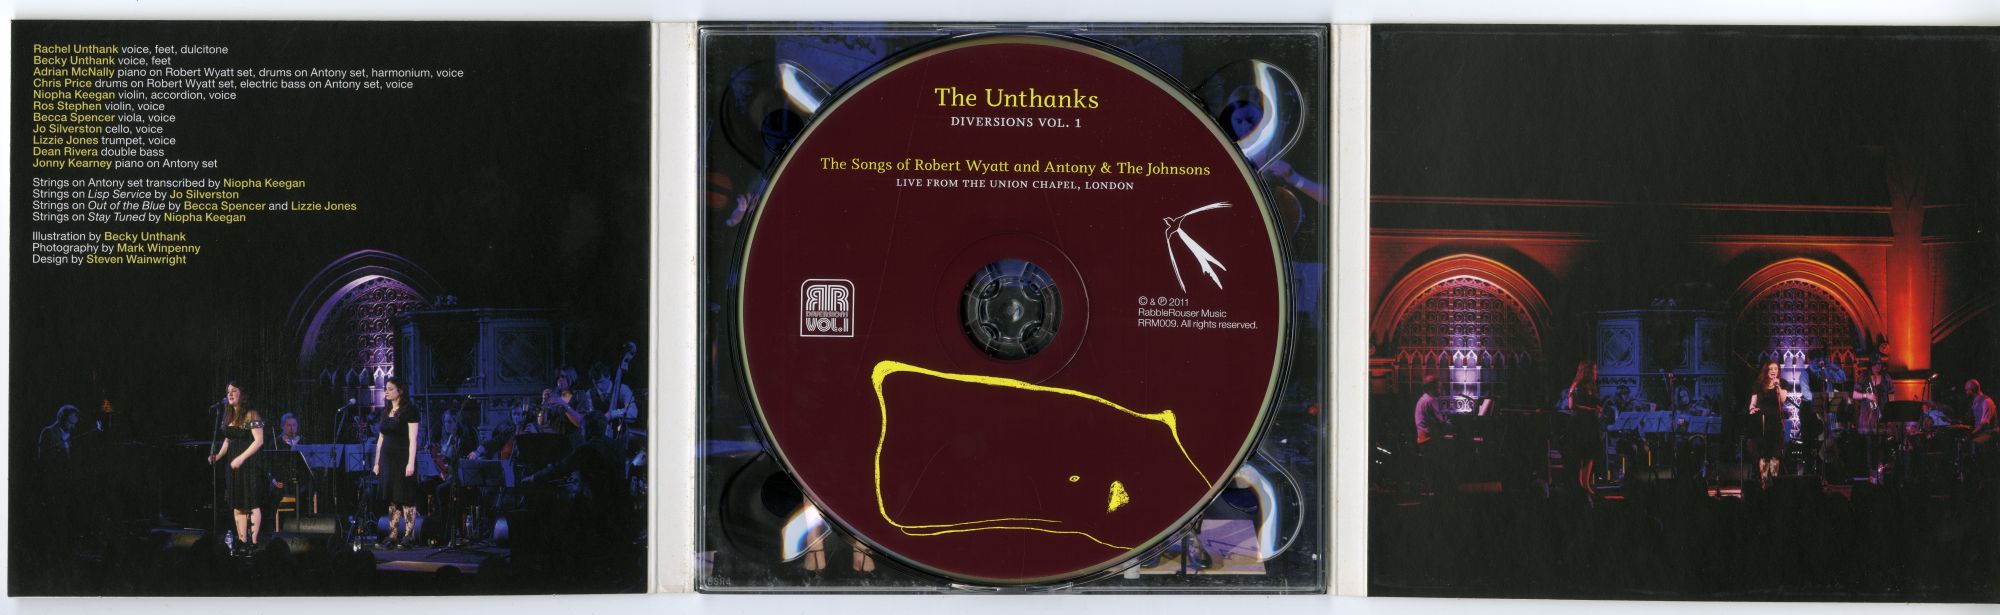 The Unthanks『Diversions VOL. 1』02